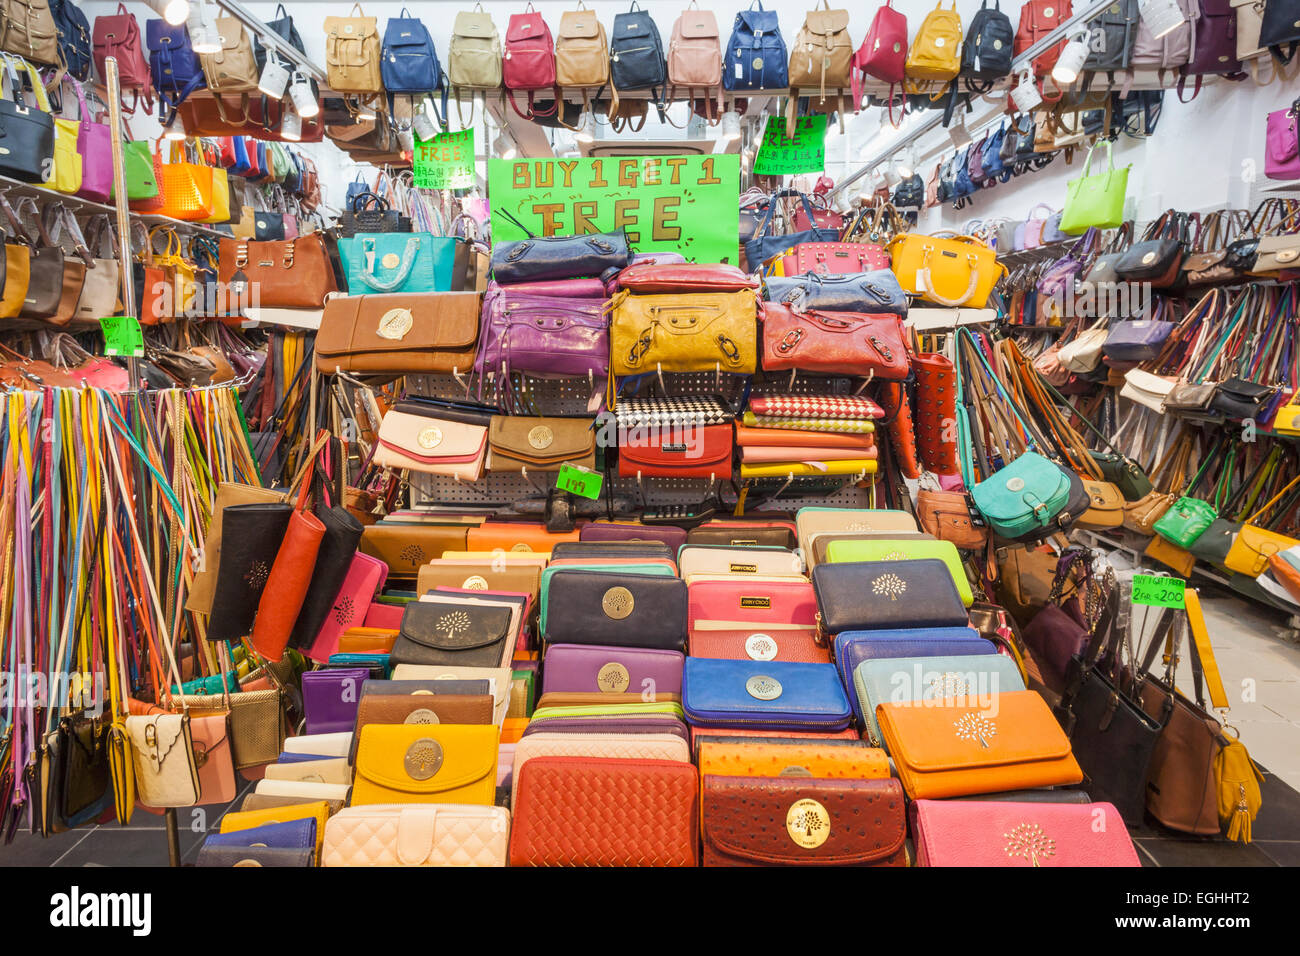 China, Hong Kong, Stanley Market, Shop Display of Fake Purses and Stock Photo: 79063154 - Alamy